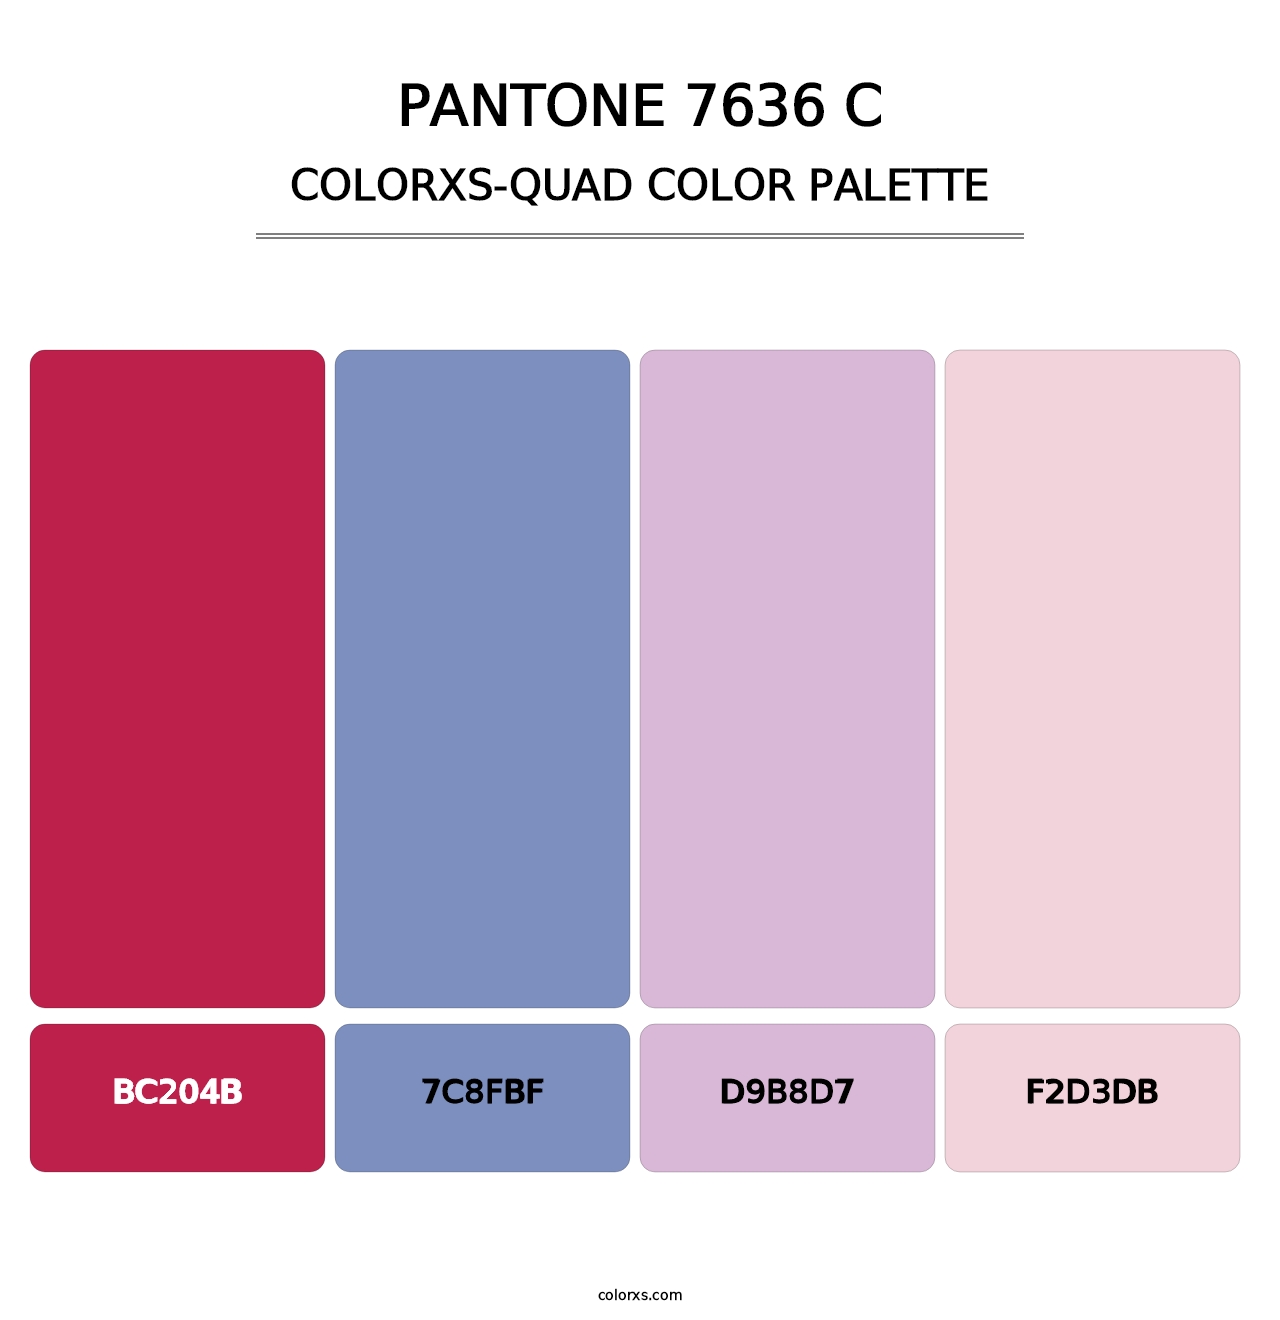 PANTONE 7636 C - Colorxs Quad Palette